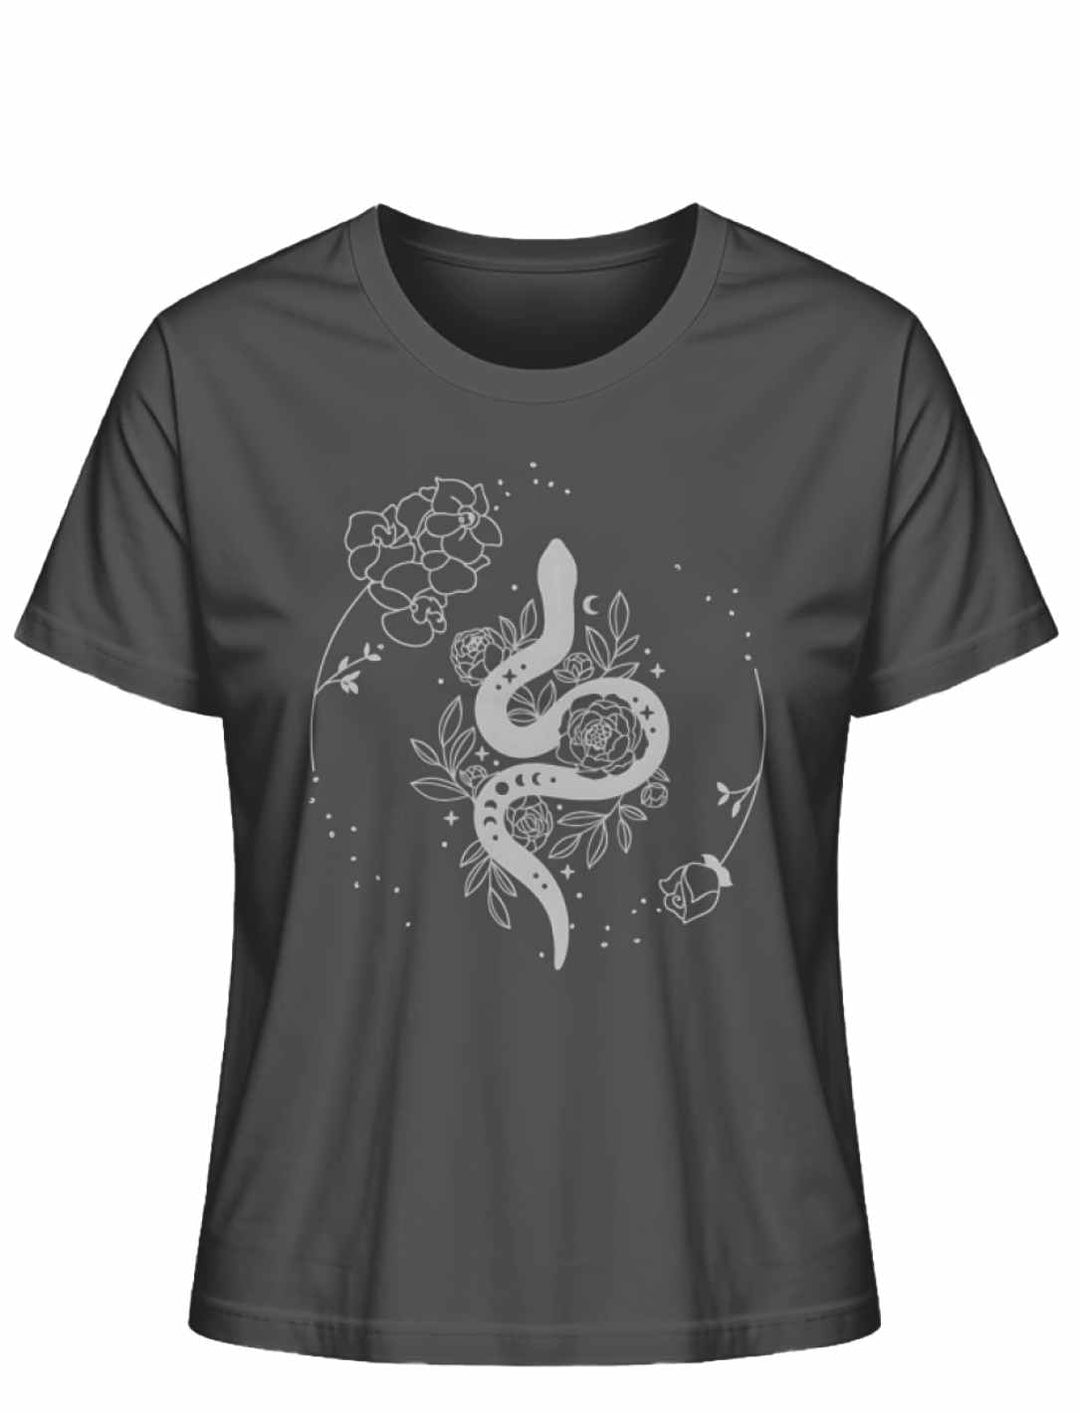 Snake of Wisdom T-Shirt in Schwarz auf weißem Hintergrund, zeigt eine detailreiche Darstellung einer Schlange und floralen Motiven, symbolisch für Wissen und Transformation.